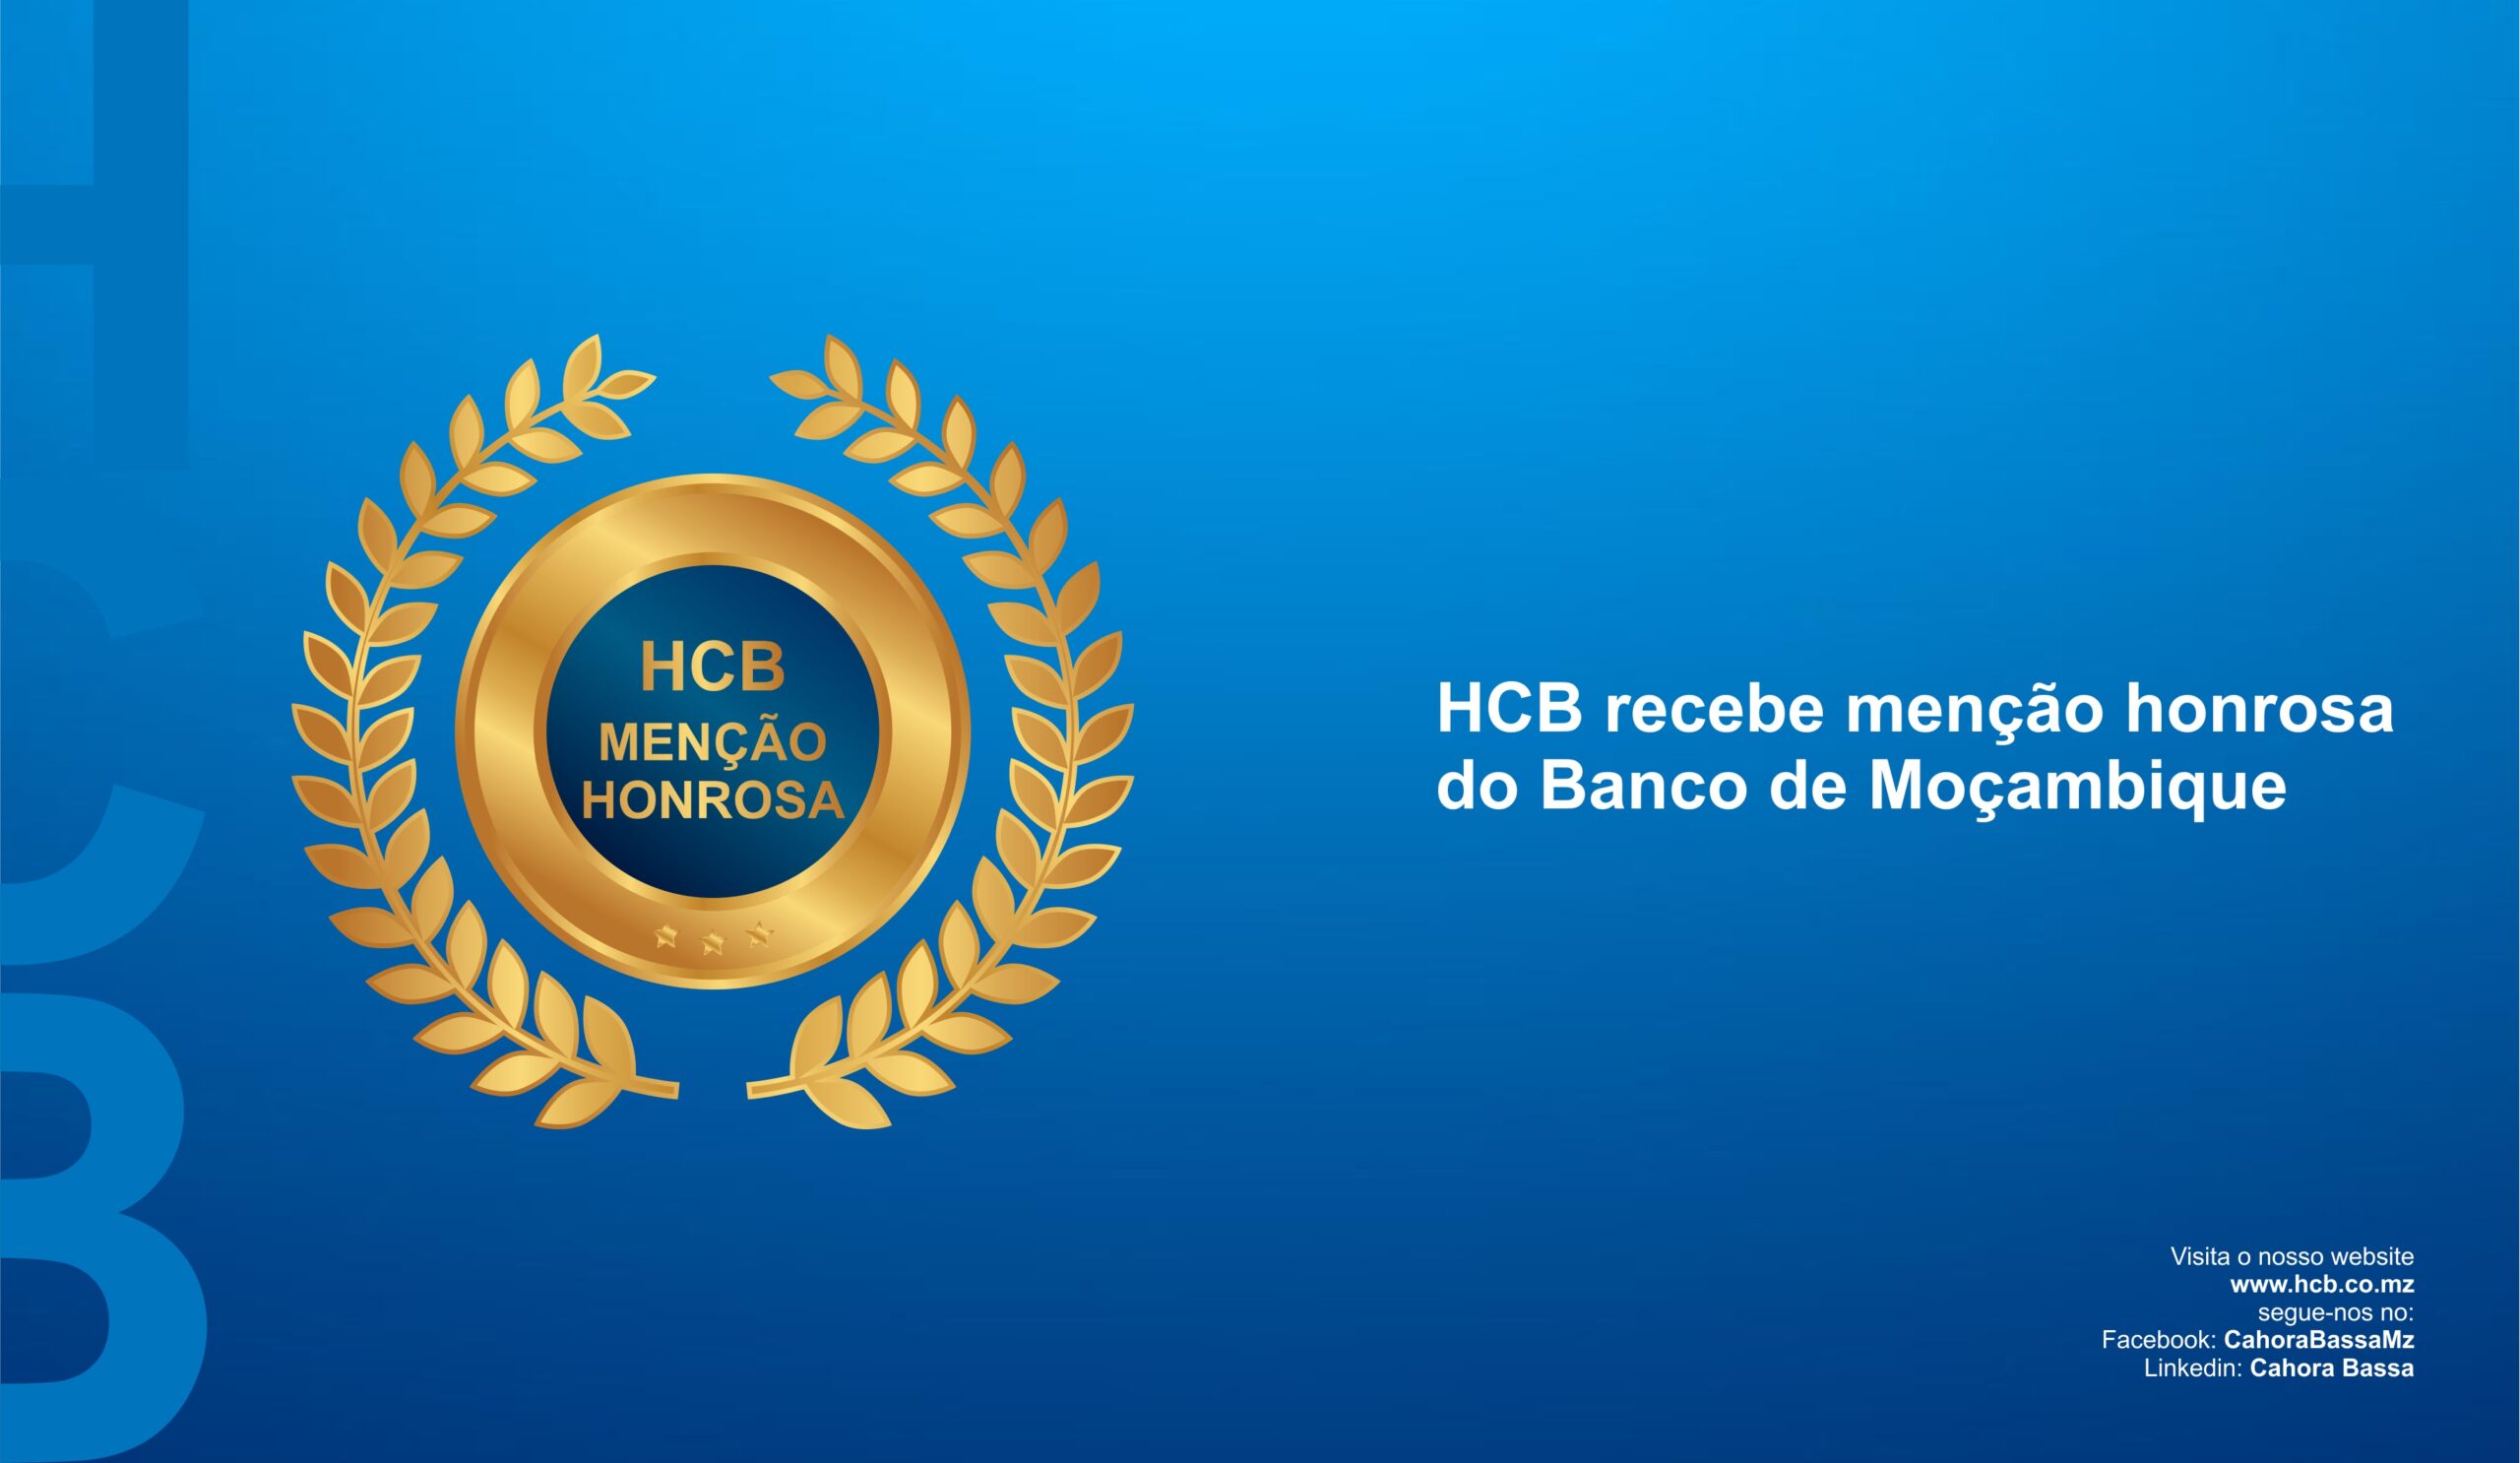 HCB recebe menção honrosa do Banco de Moçambique, TVC e Intra